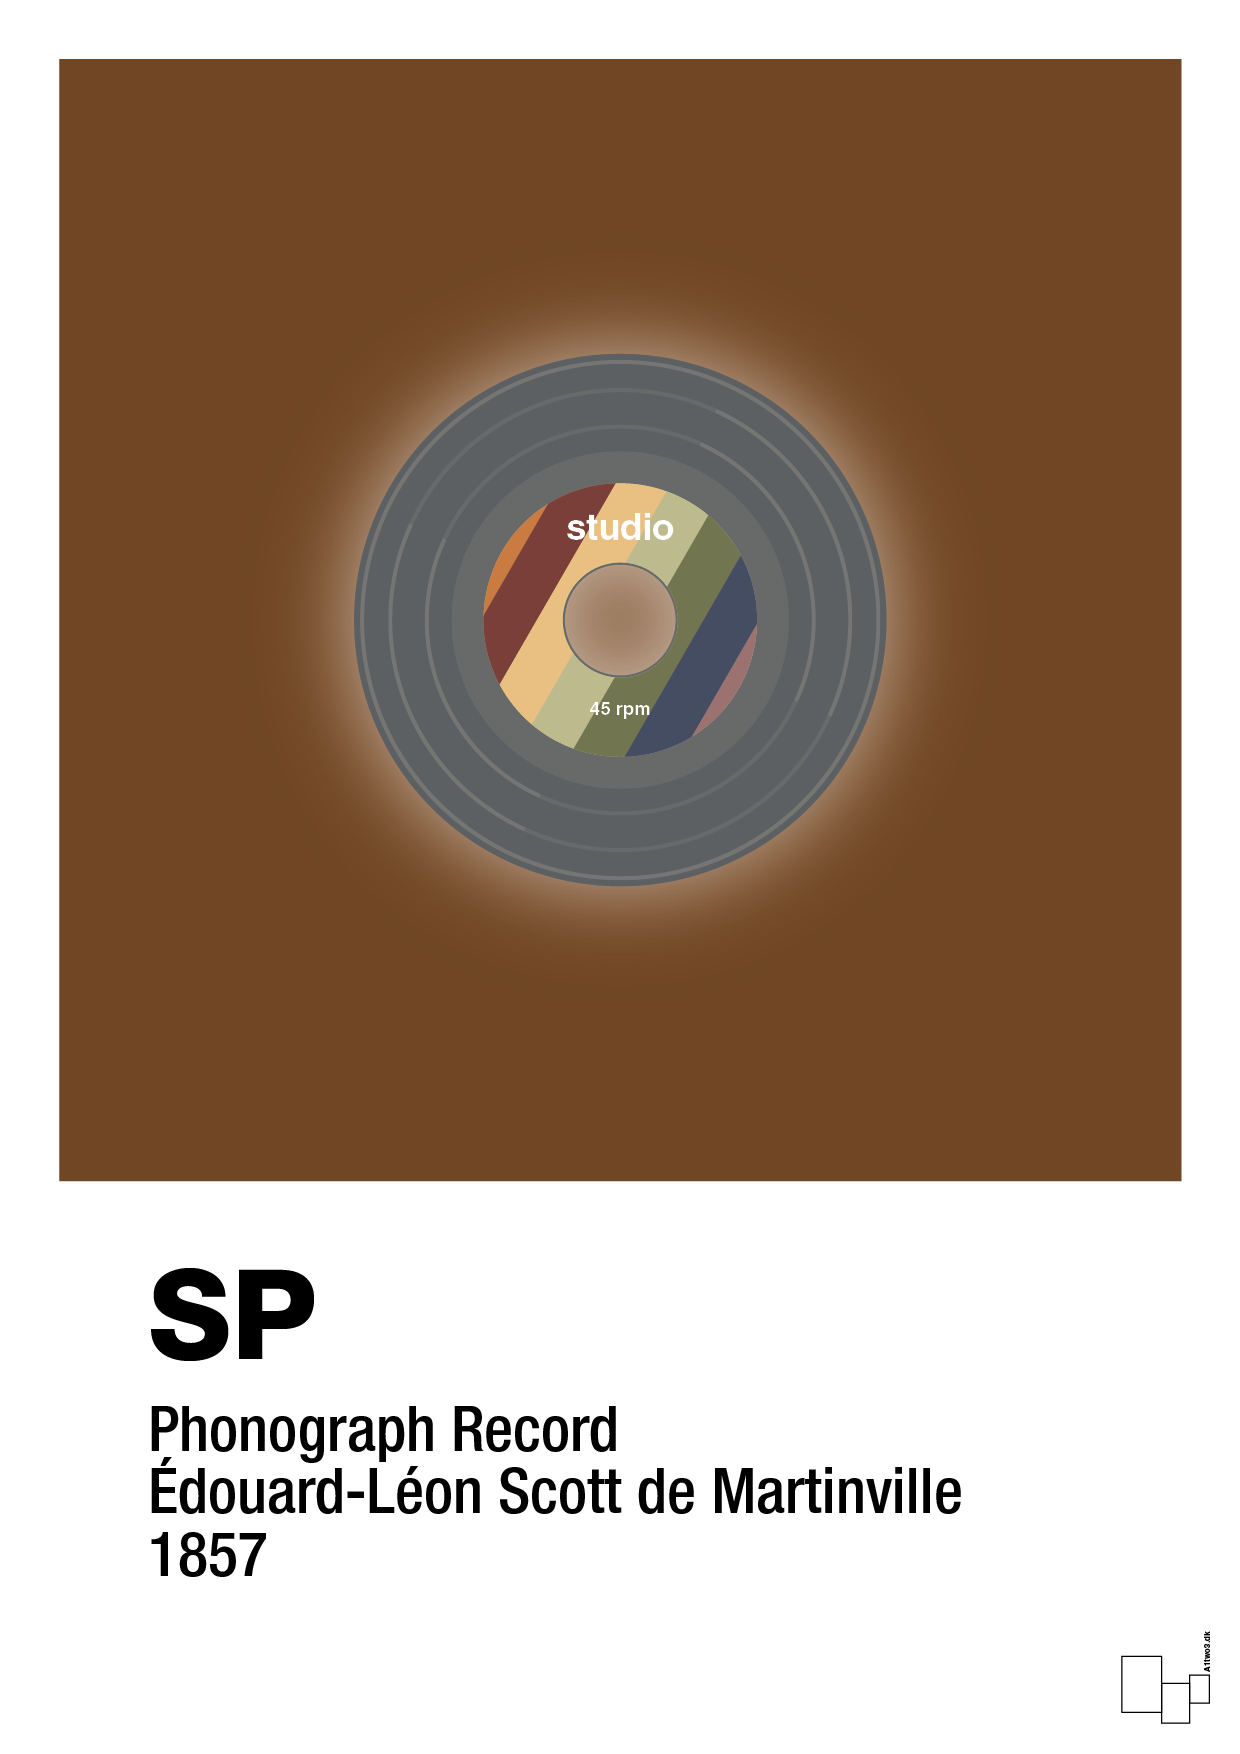 vinylplade 45rpm - Plakat med Grafik i Dark Brown